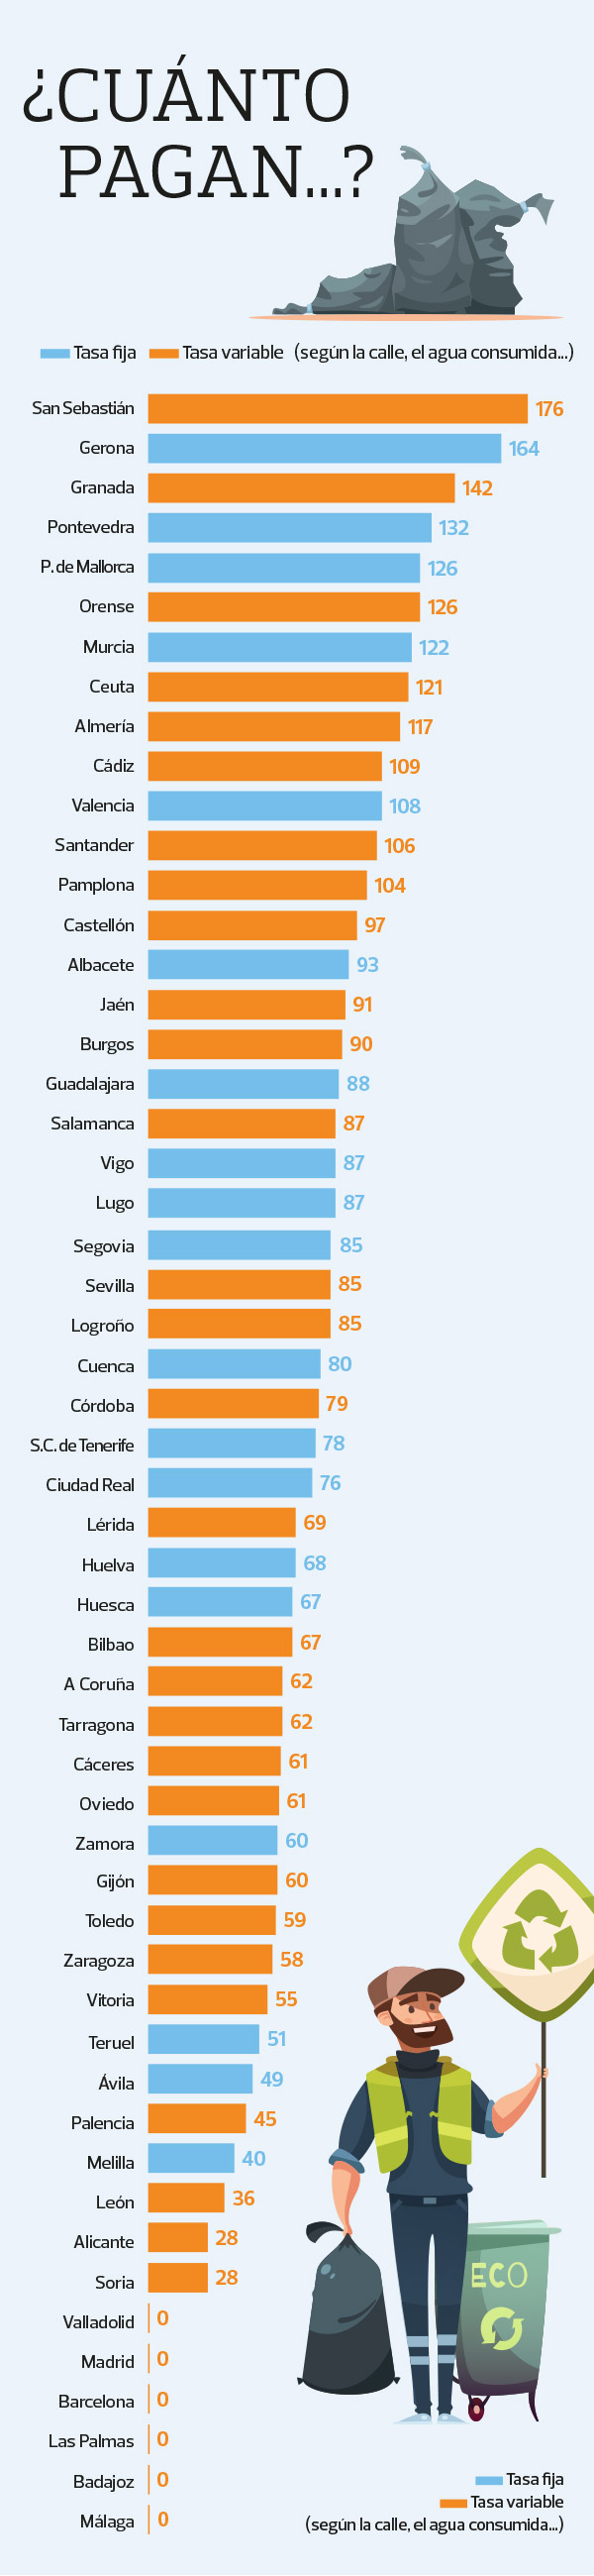 Gráfica de la OCU sobre la tasa de basura de basuras en las ciudades españolas